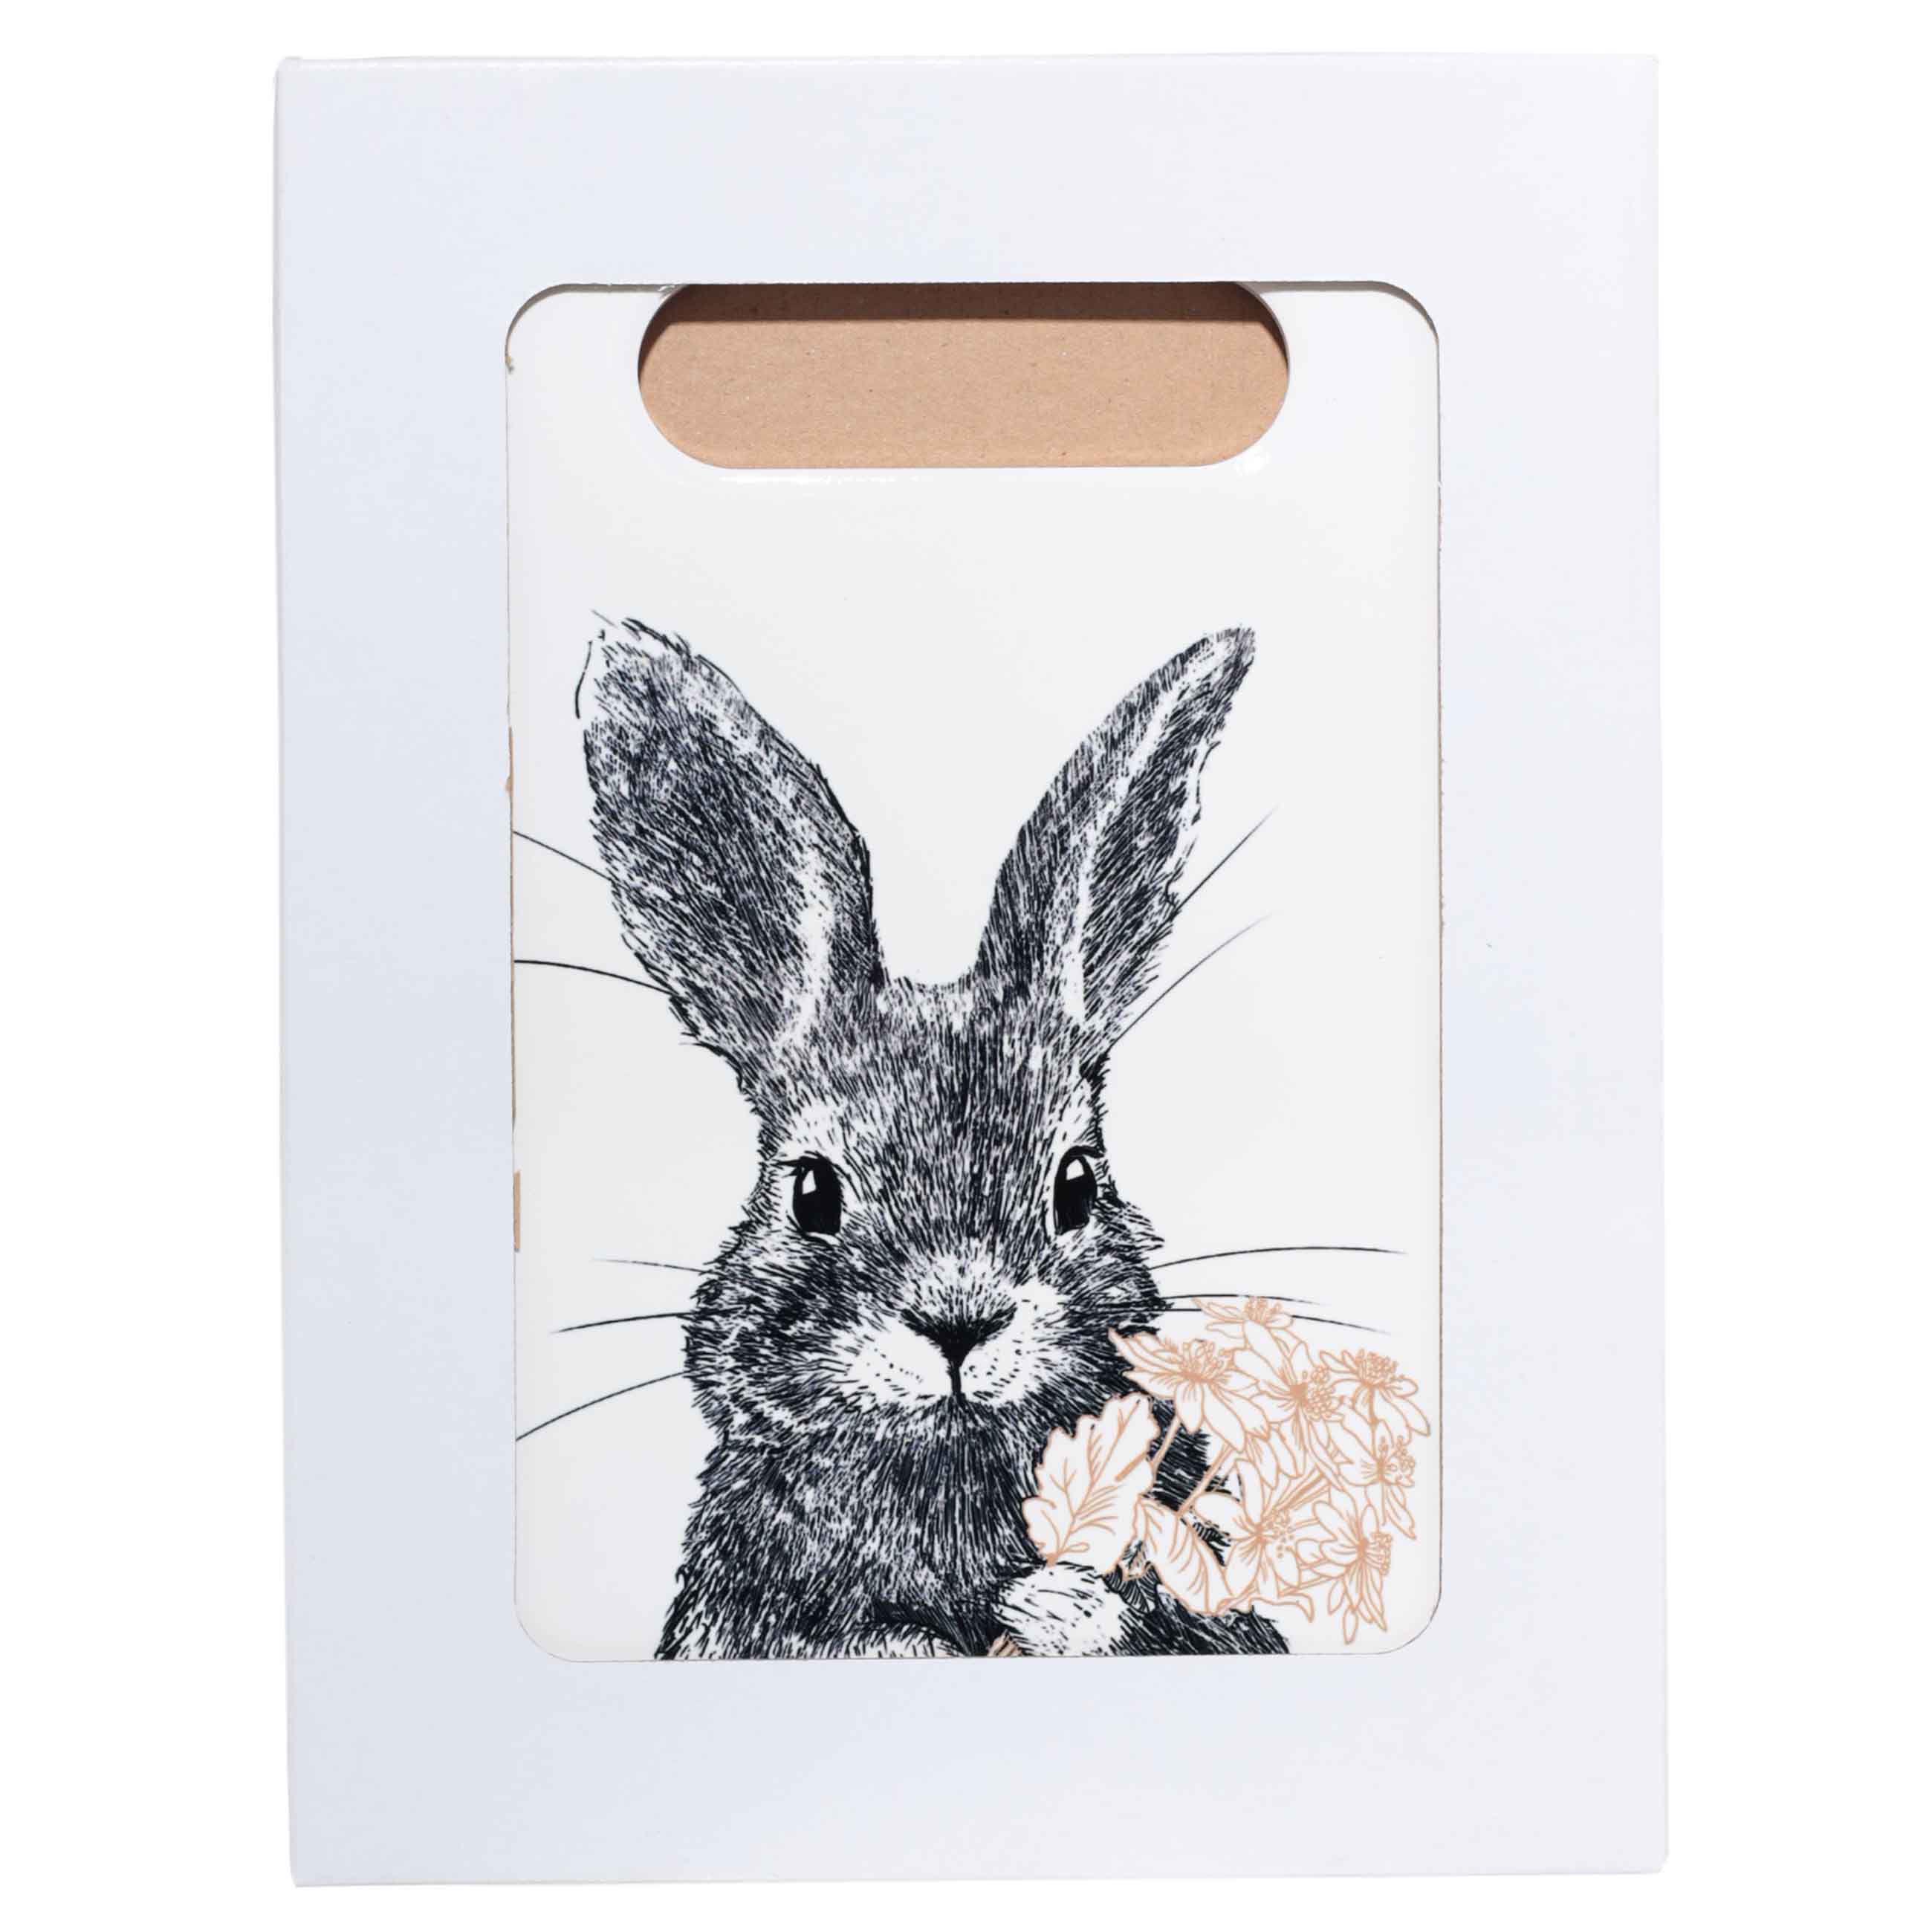 Подставка под горячее, 18x24 см, керамика/пробка, прямоугольная, белая, Кролик, Easter blooming изображение № 3